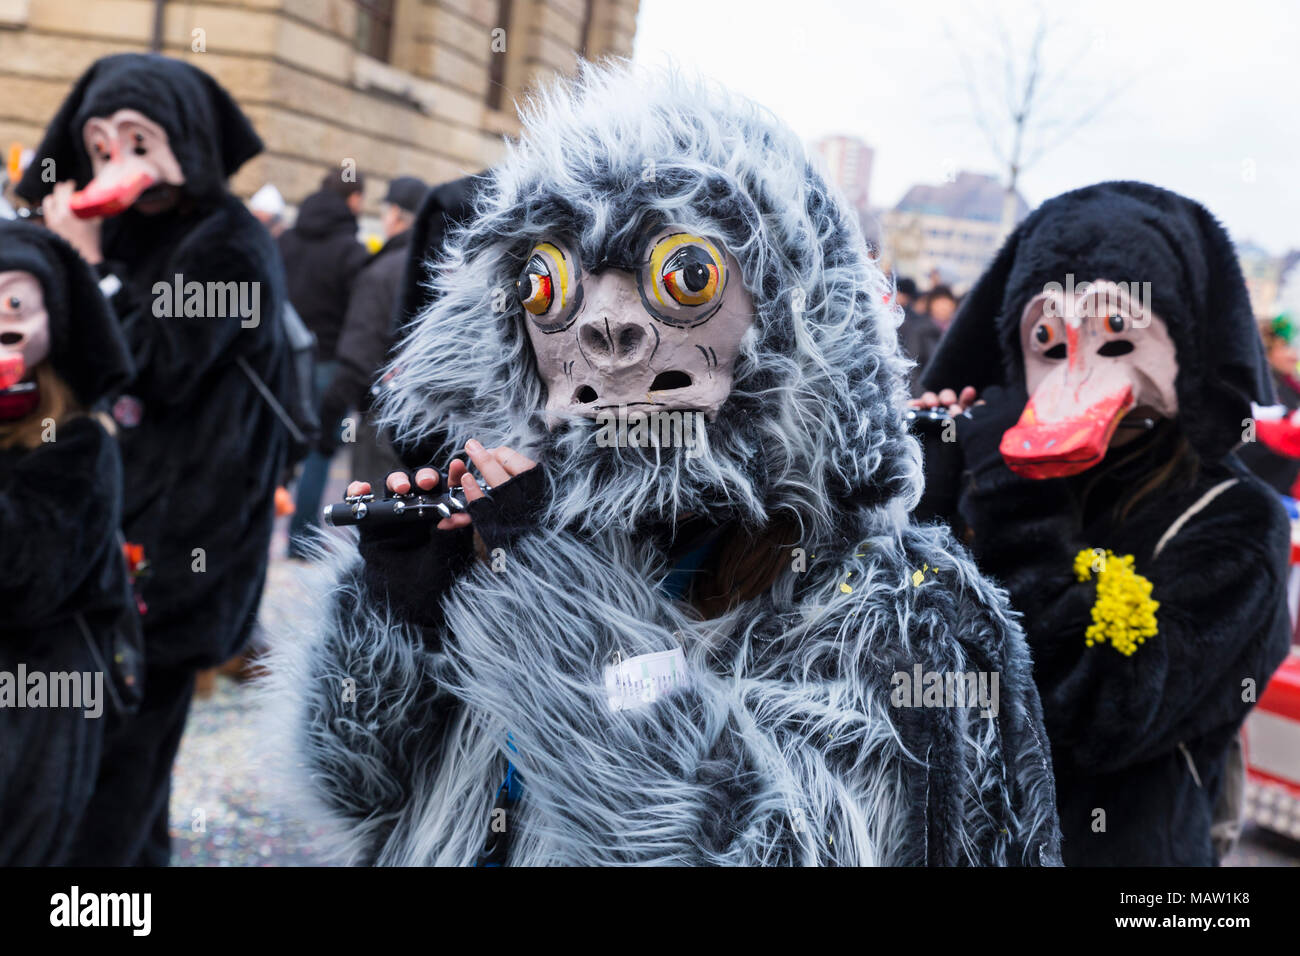 Carnaval de Bâle. Schifflaende, Bâle, Suisse - 21 février 2018. Close-up d'une flûte jouer carnival reveler Banque D'Images